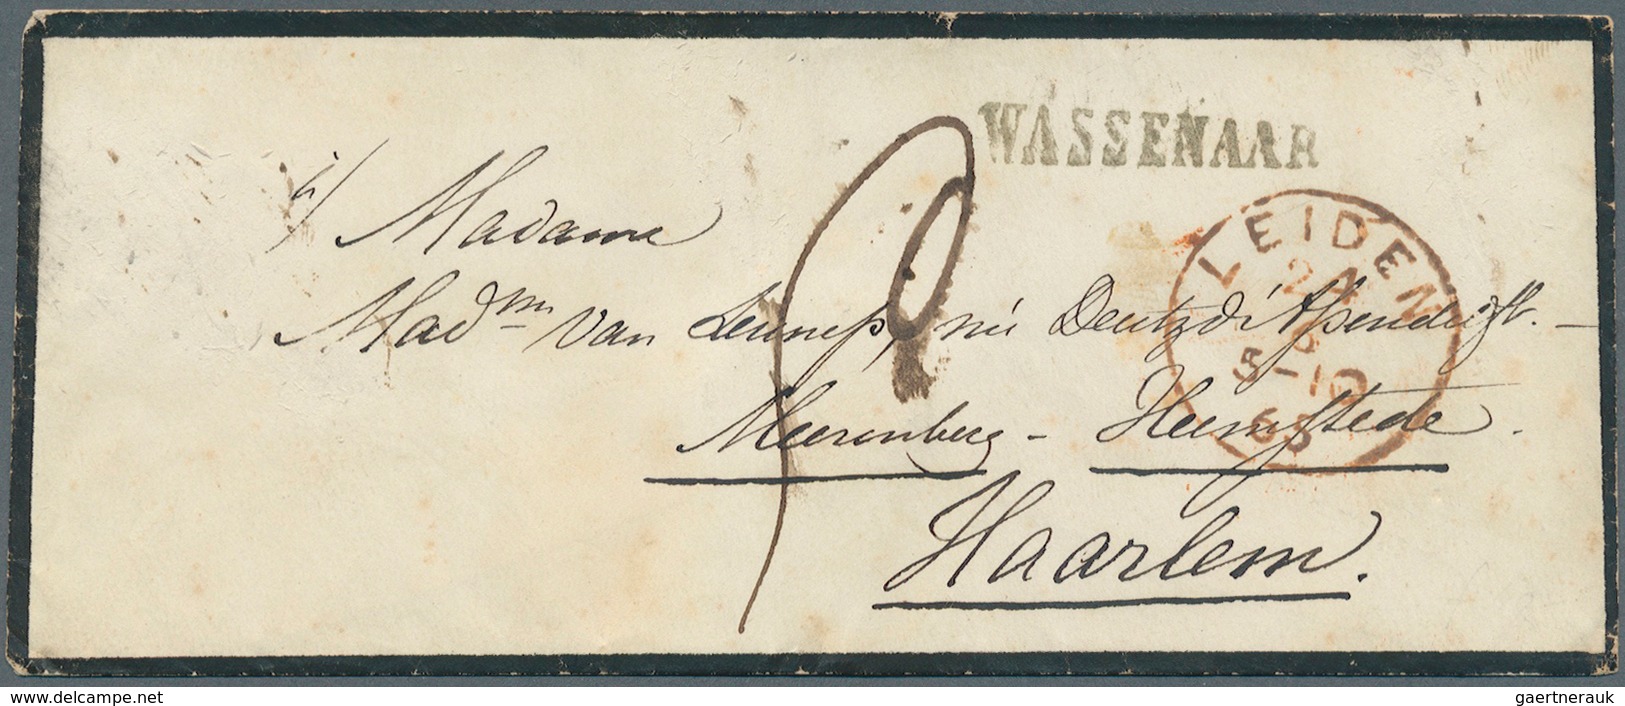 Niederlande - Vorphilatelie: 1700/1868, gehaltvolle Sammlung mit über 60 Briefen im Album. Dabei 3 B